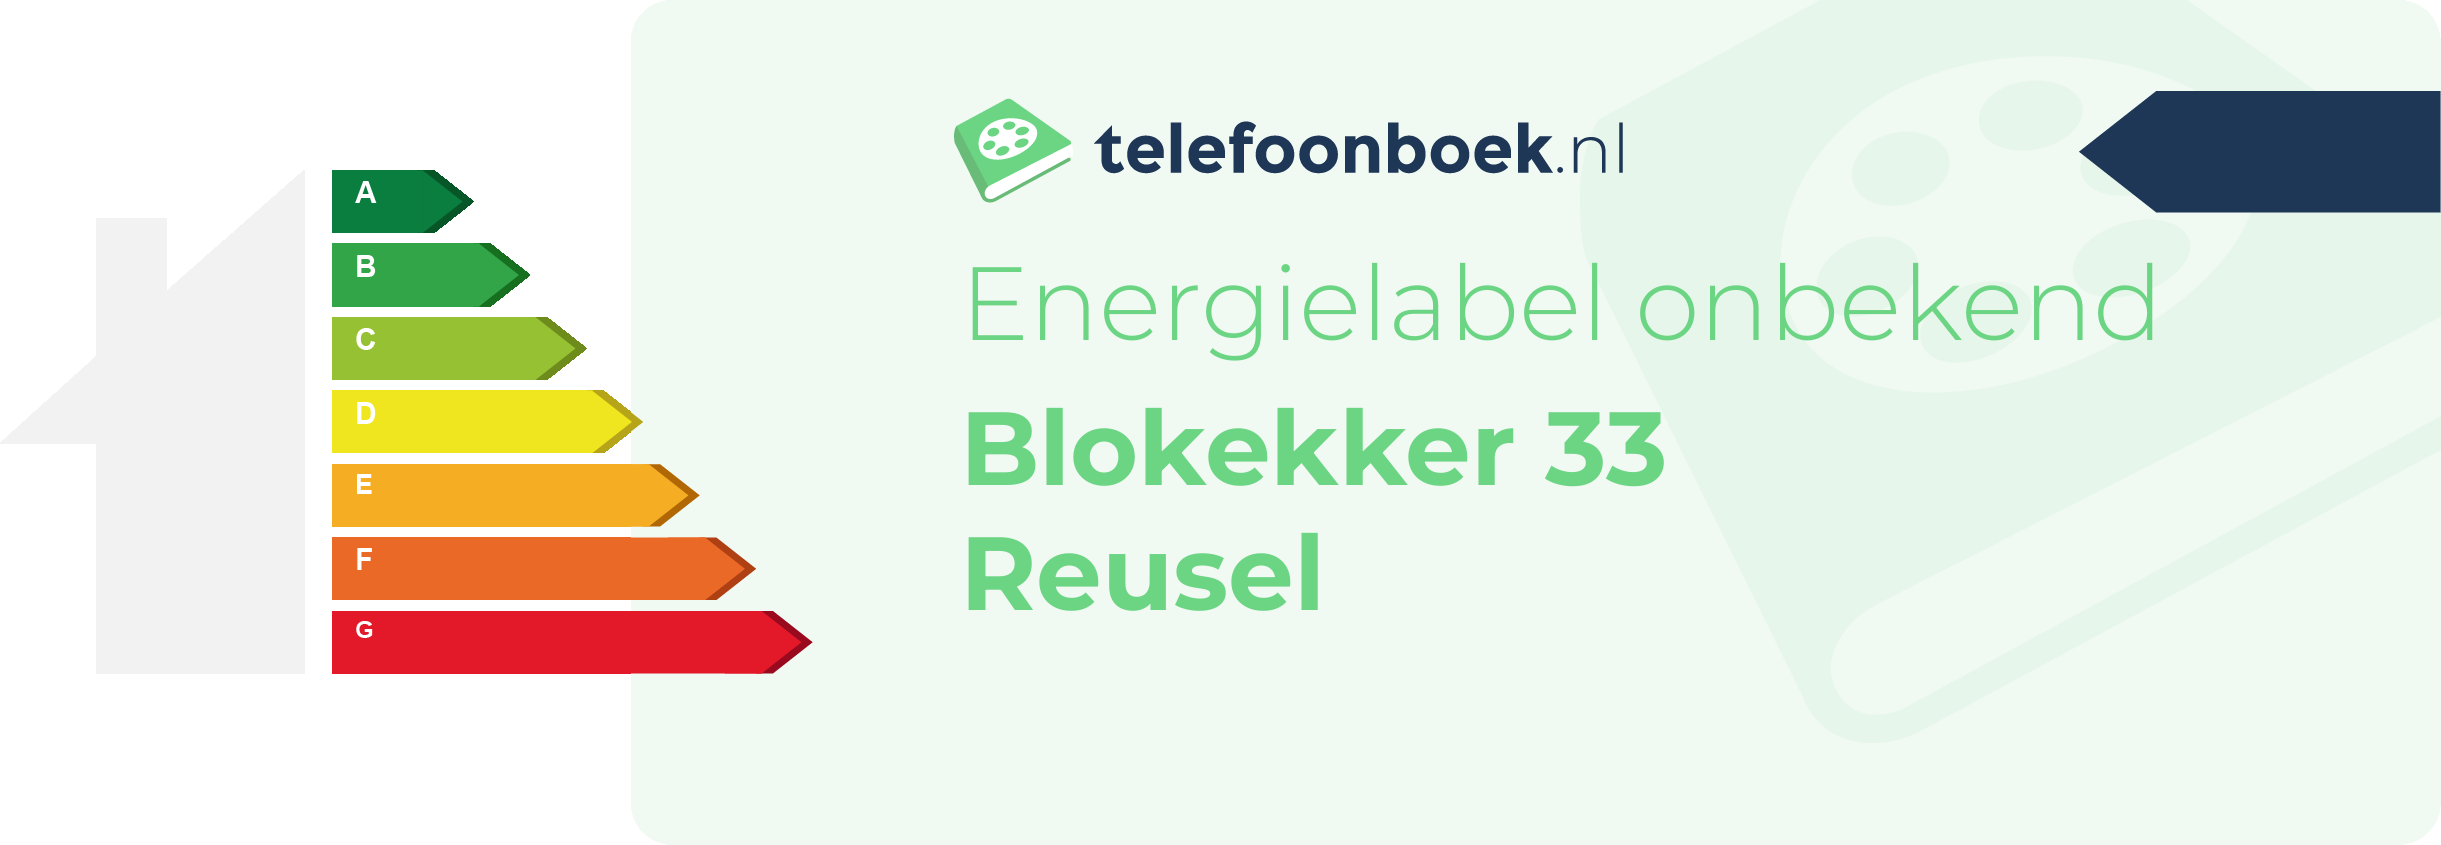 Energielabel Blokekker 33 Reusel